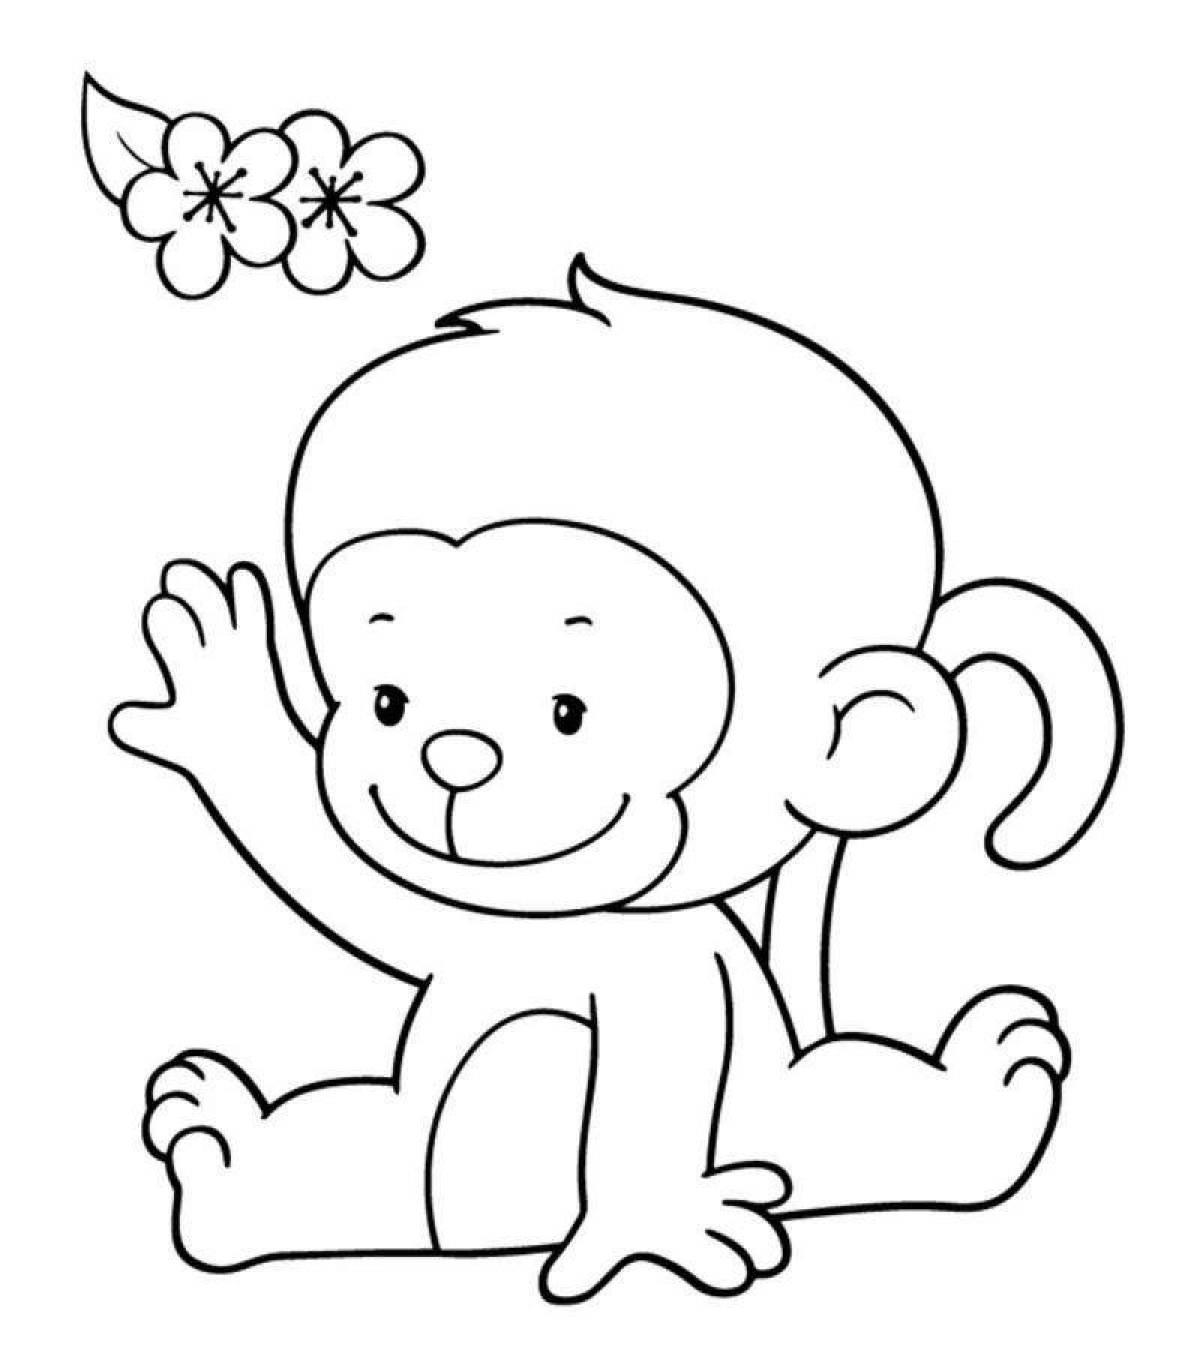 Яркая раскраска обезьянка для детей